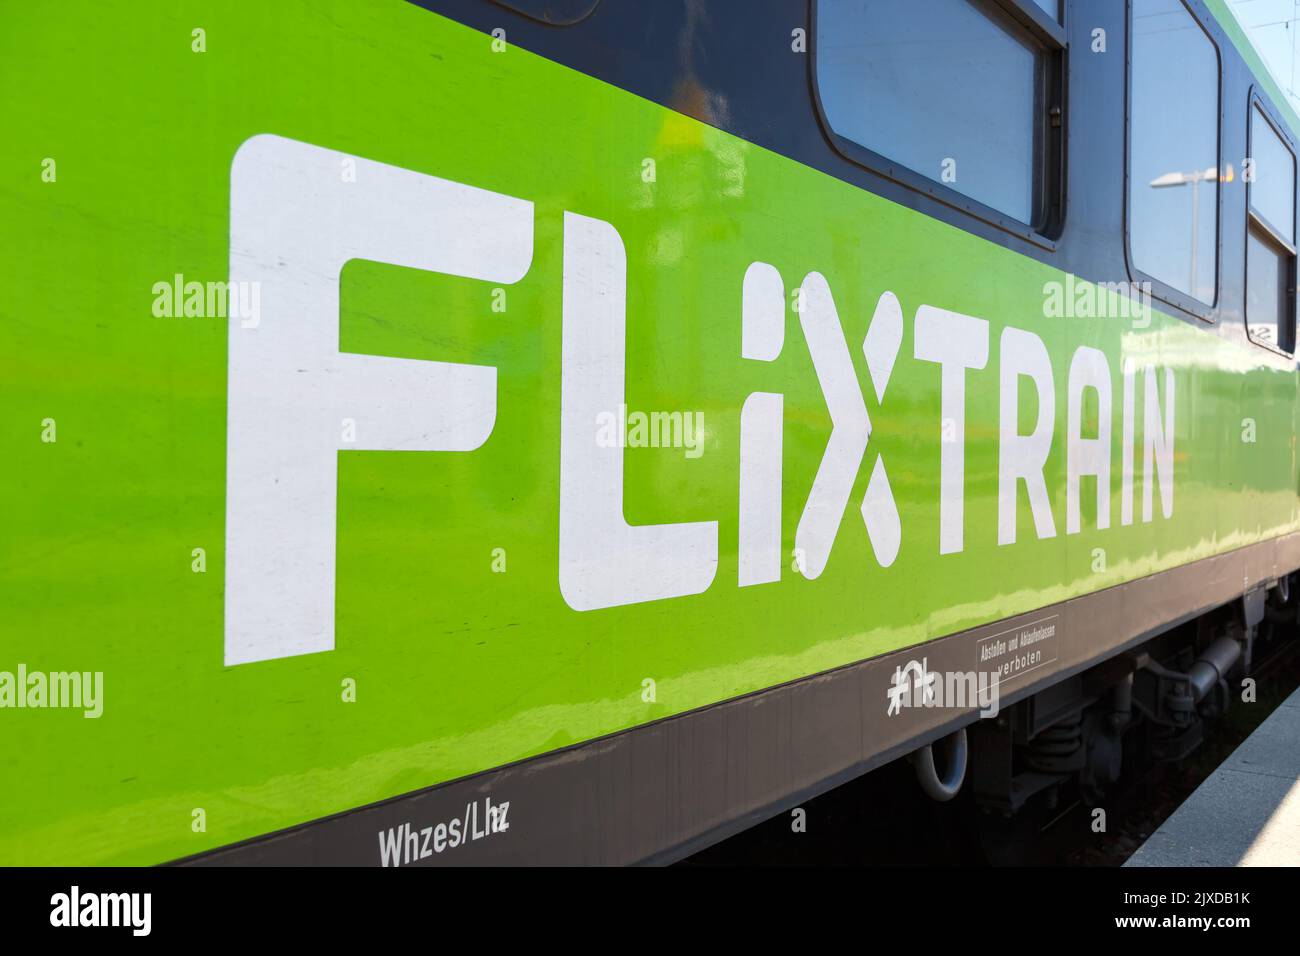 Stuttgart, Germany - April 28, 2022: Flixtrain logo on a train at main railway station in Stuttgart, Germany. Stock Photo